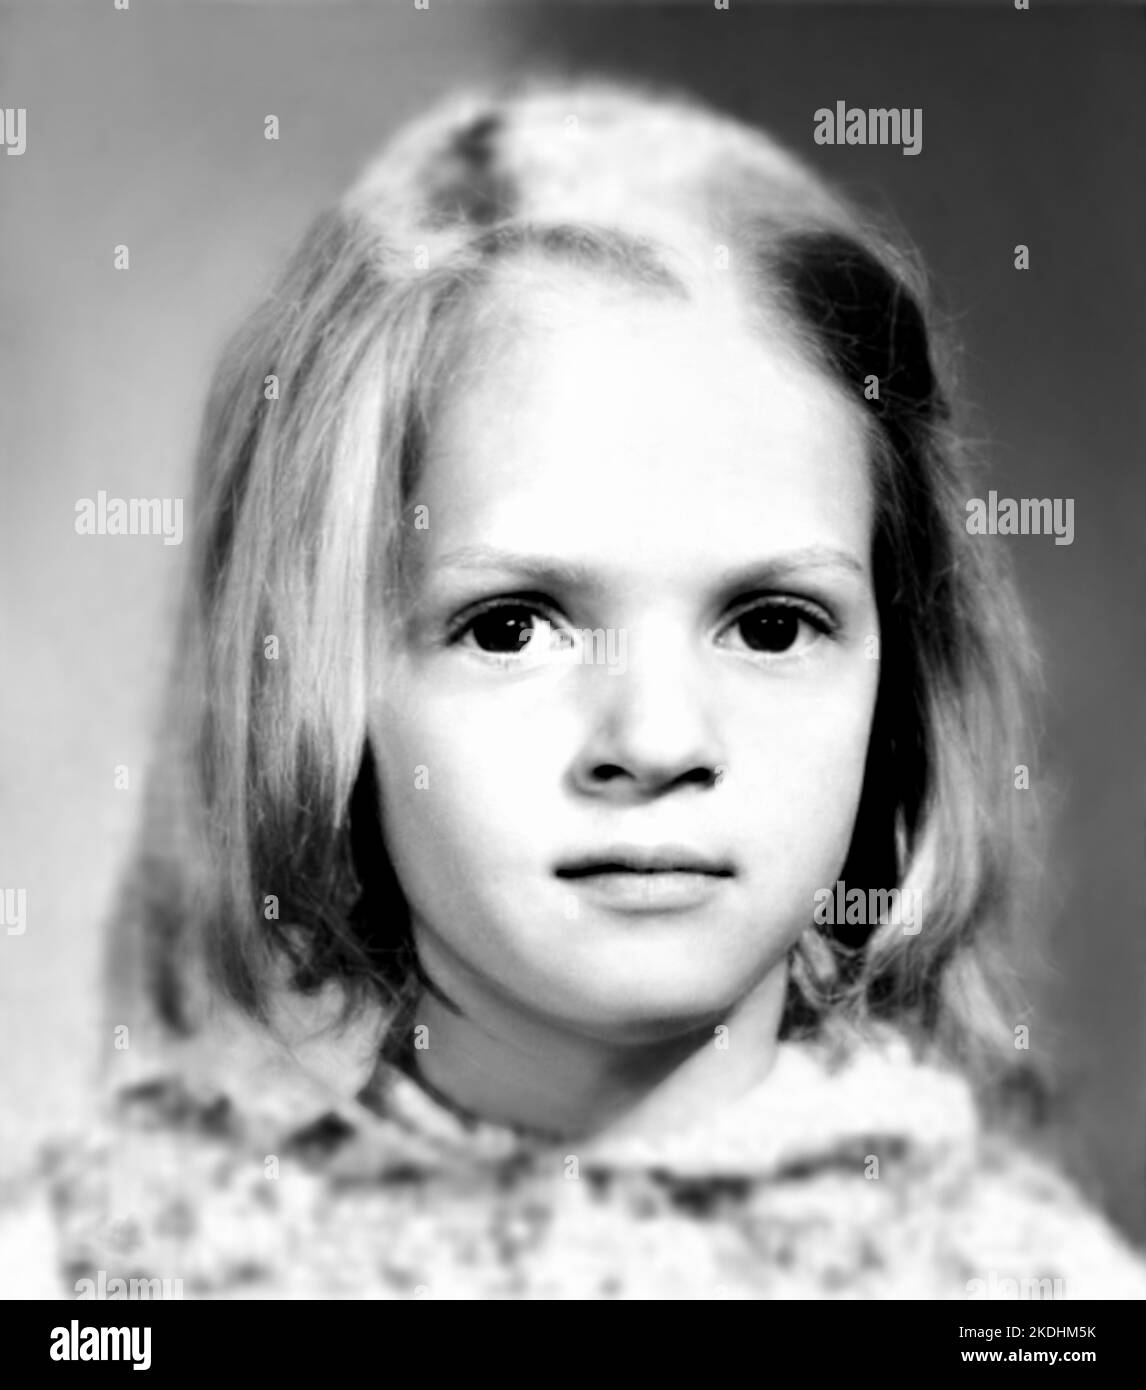 1975 , BOSTON , USA : die amerikanische Schauspielerin UMA THURMAN ( geboren 29. april 1970 ), als ein junges Mädchen im Alter von 5 war . Unbekannter Fotograf. - GESCHICHTE - FOTO STORICHE - ATTORE - FILM - KINO - personalità da giovani da giovane - Persönlichkeit Persönlichkeiten, als jung war - INFANZIA - KINDHEIT - BAMBINO - BAMBINI --- ARCHIVIO GBB Stockfoto